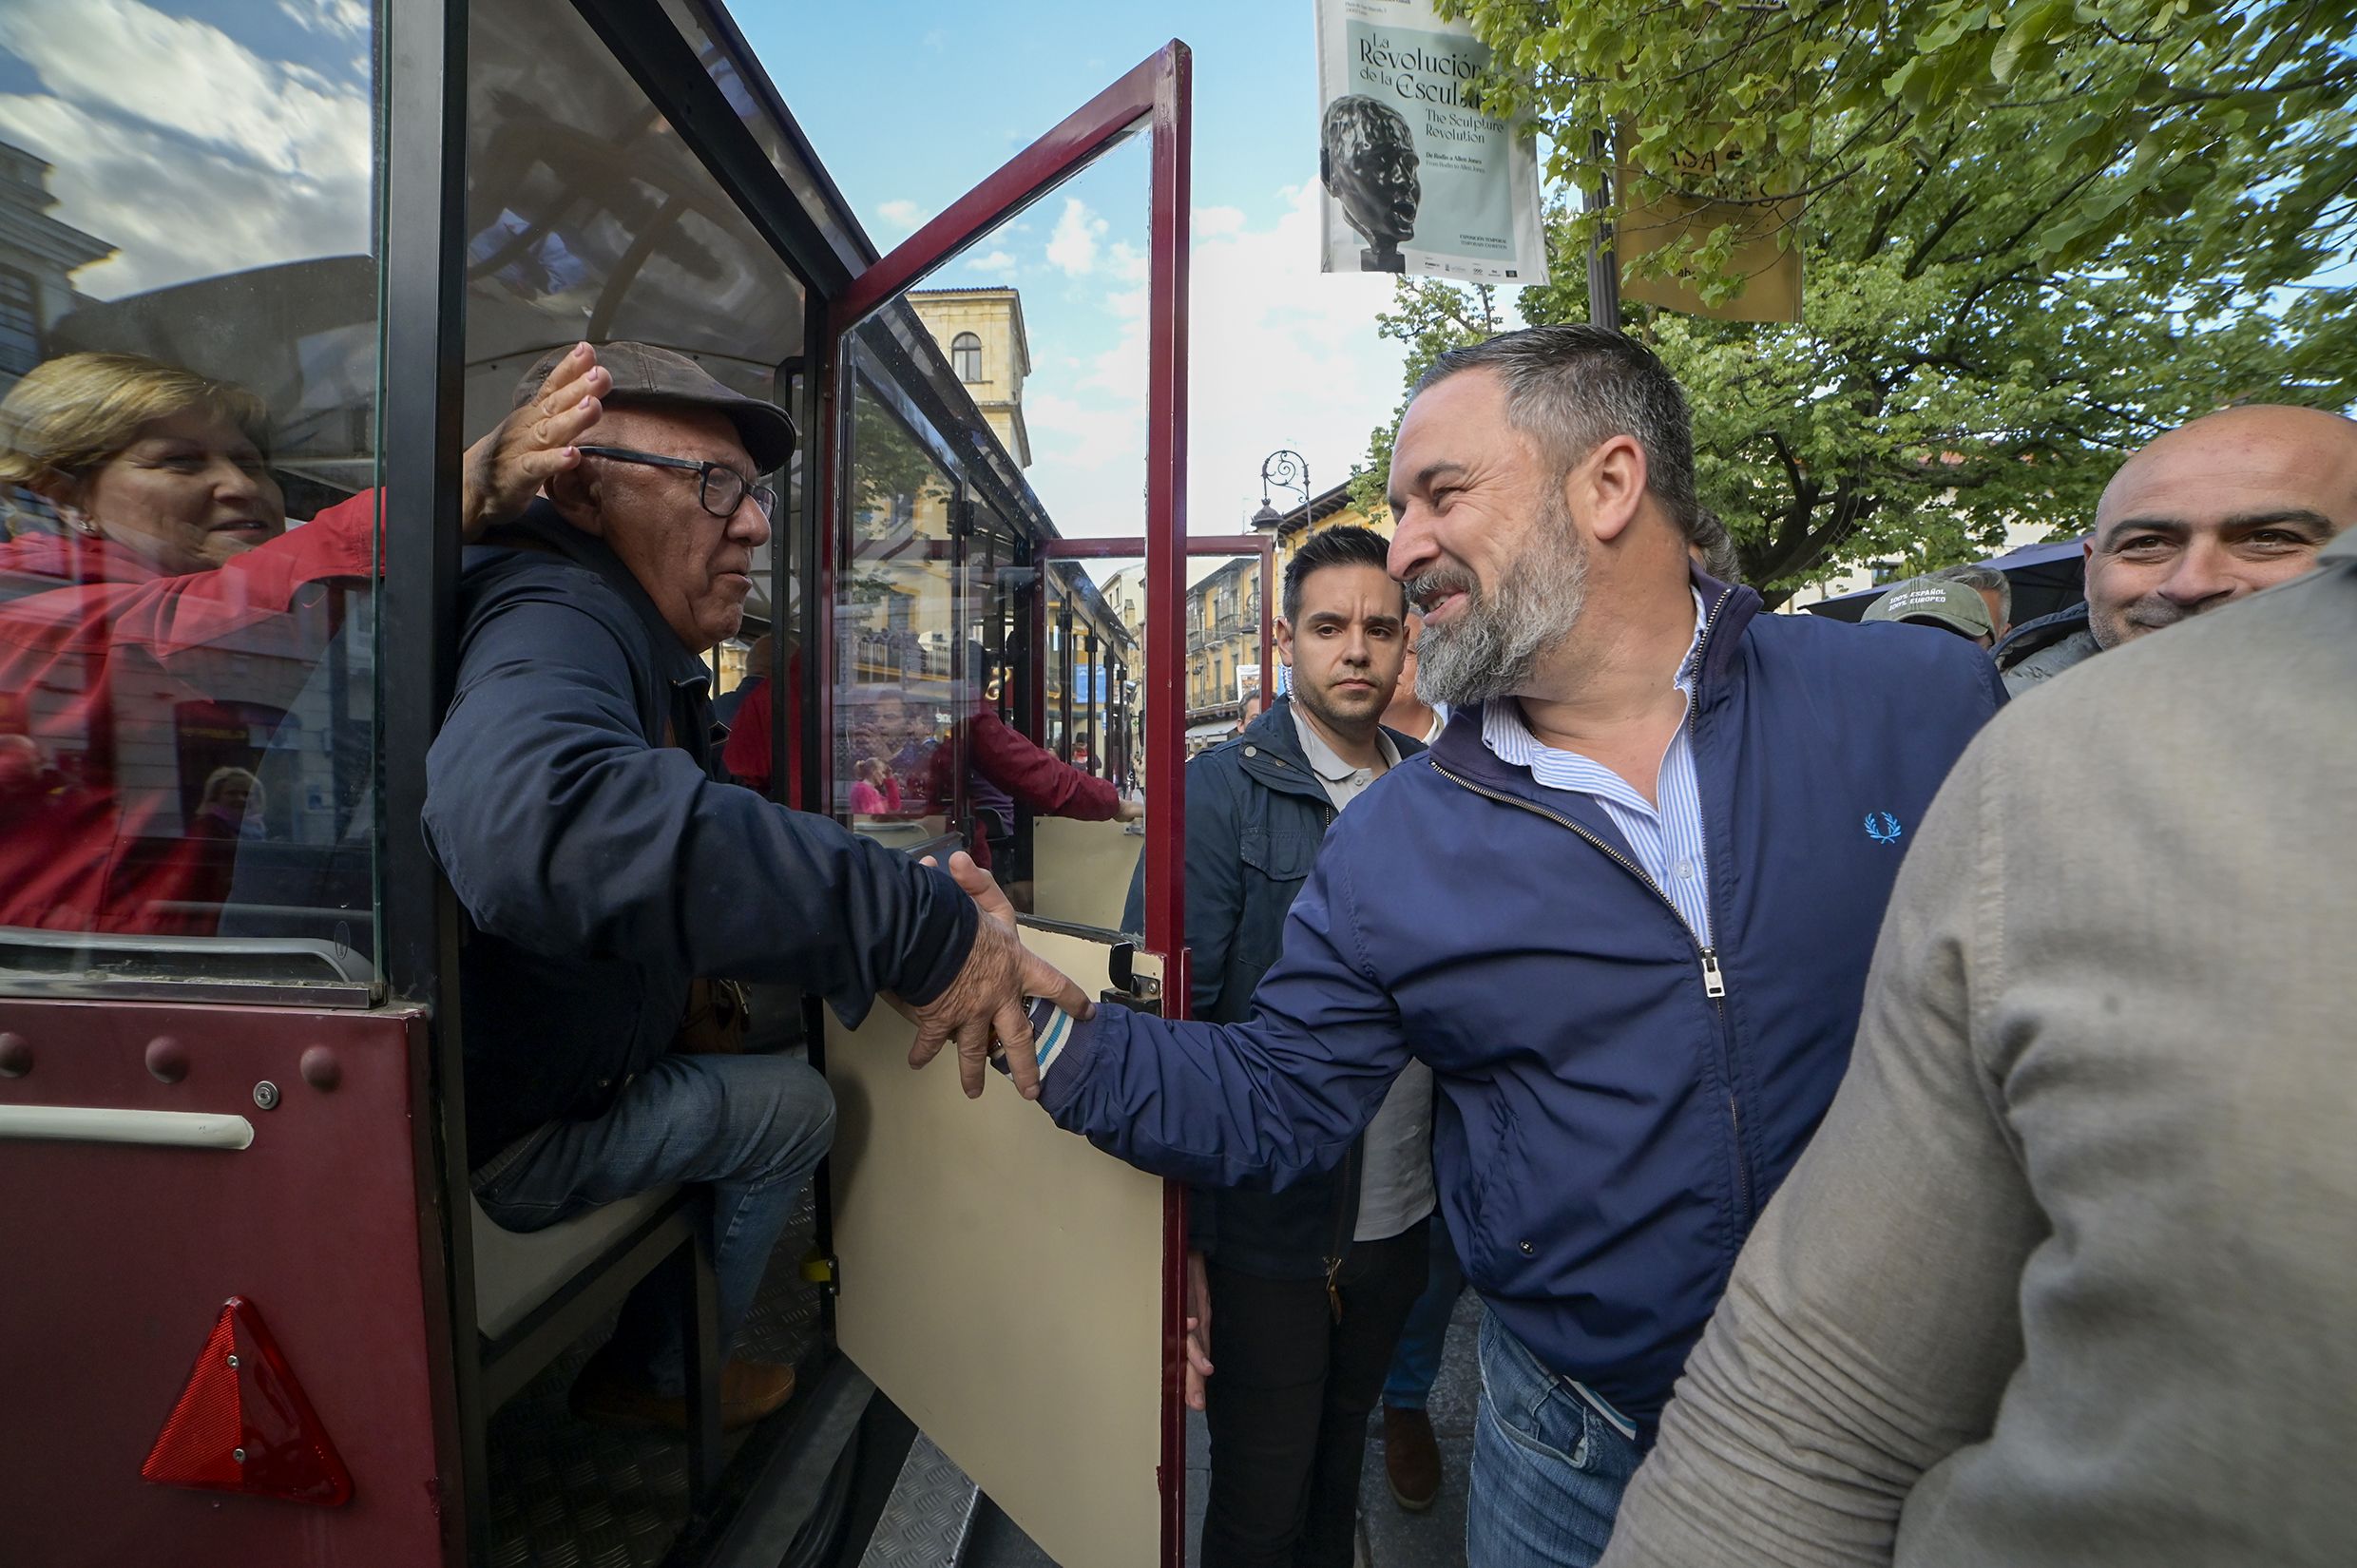 El líder de Vox, Santiago Abascal, bajó por la calle Ancha, saludando a sus seguidores antes del mitin en León. | MAURICIO PEÑA